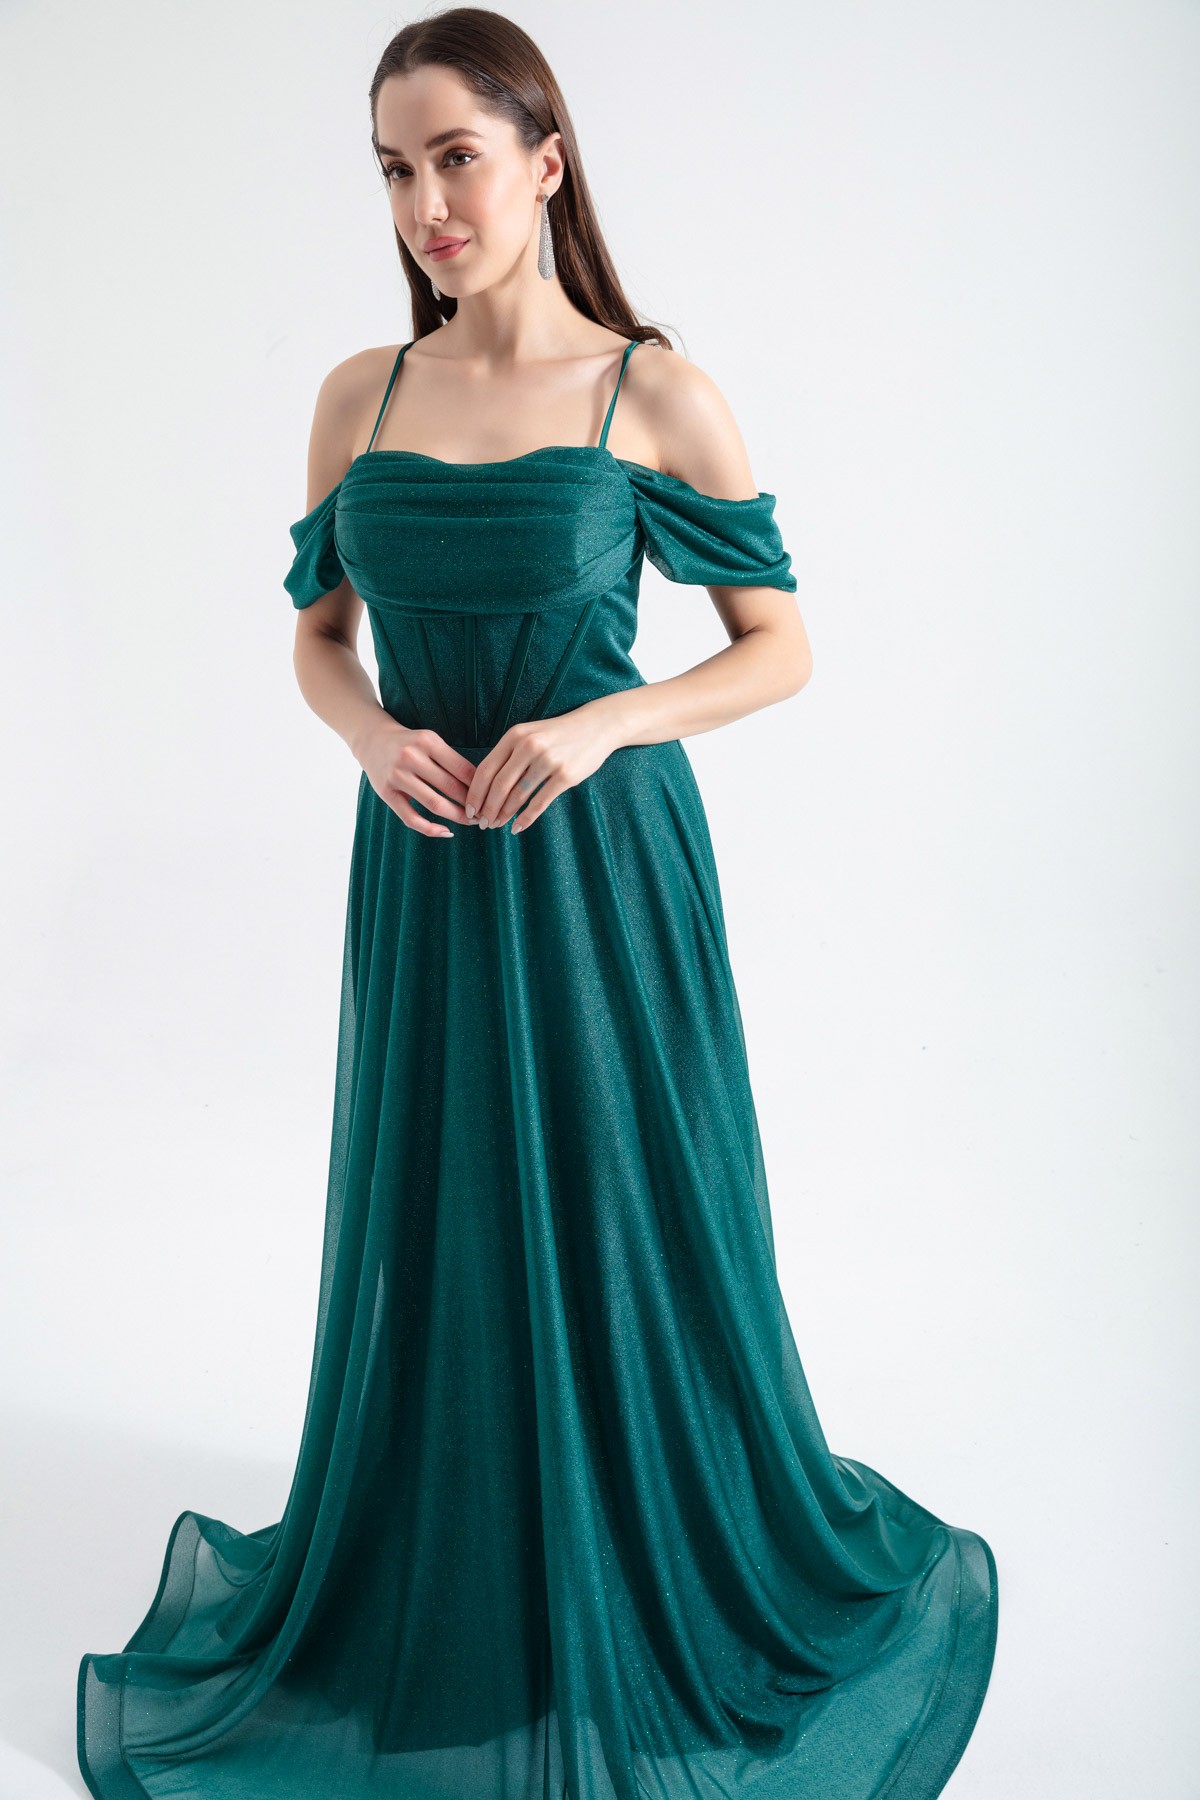 Kadın Askılı Simli Uzun Kloş Abiye Elbise - Zümrüt Yeşili